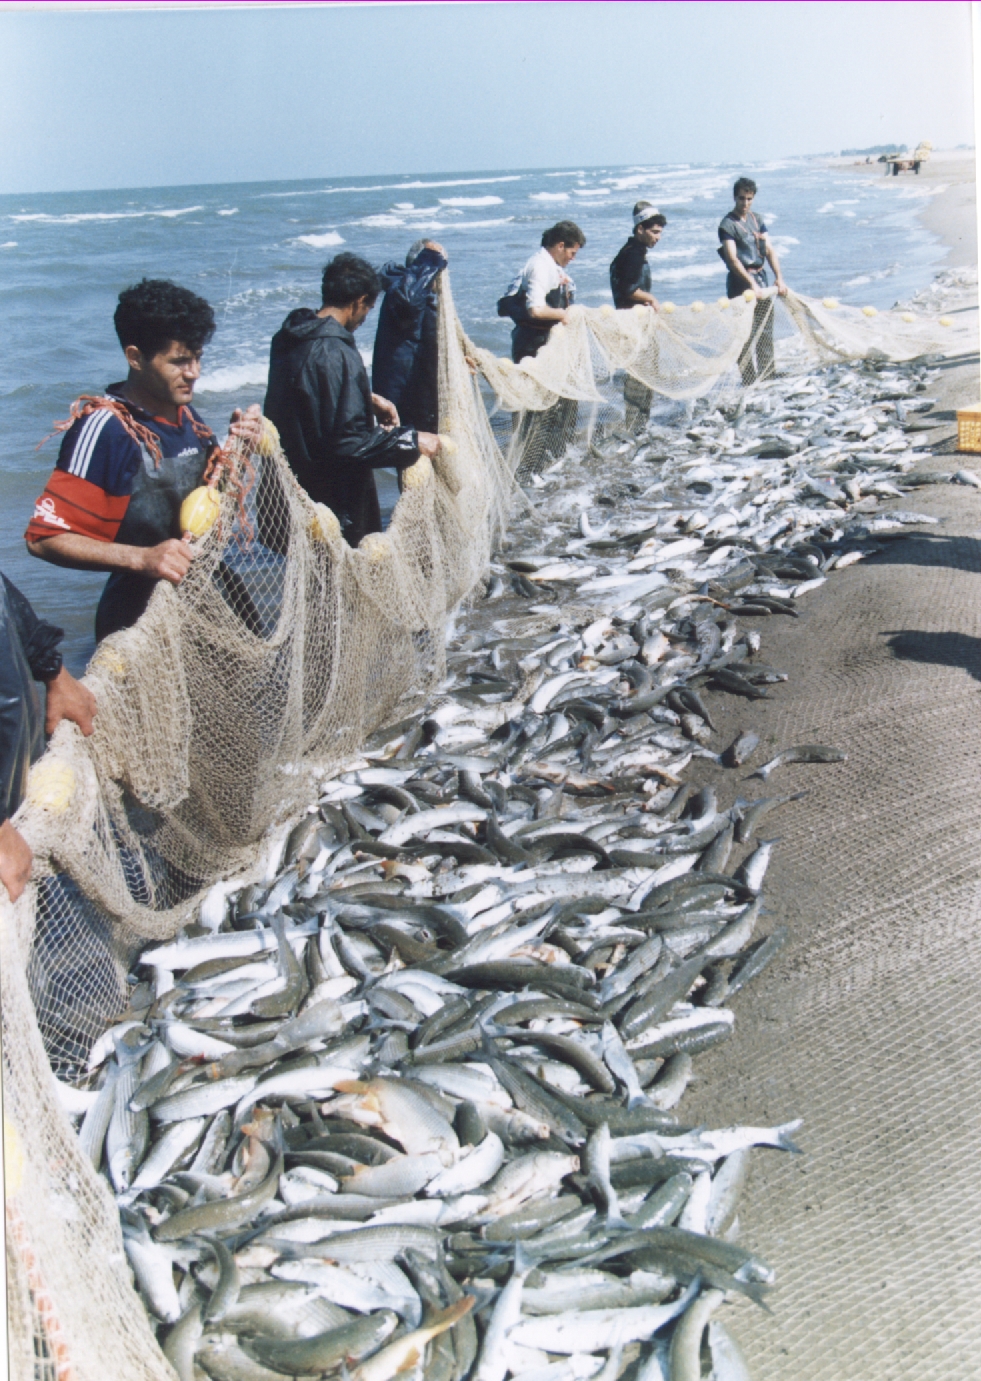 پایان صیدماهیان استخوانی درمازندران با صید2700 تن ماهی در25 فروردین ماه